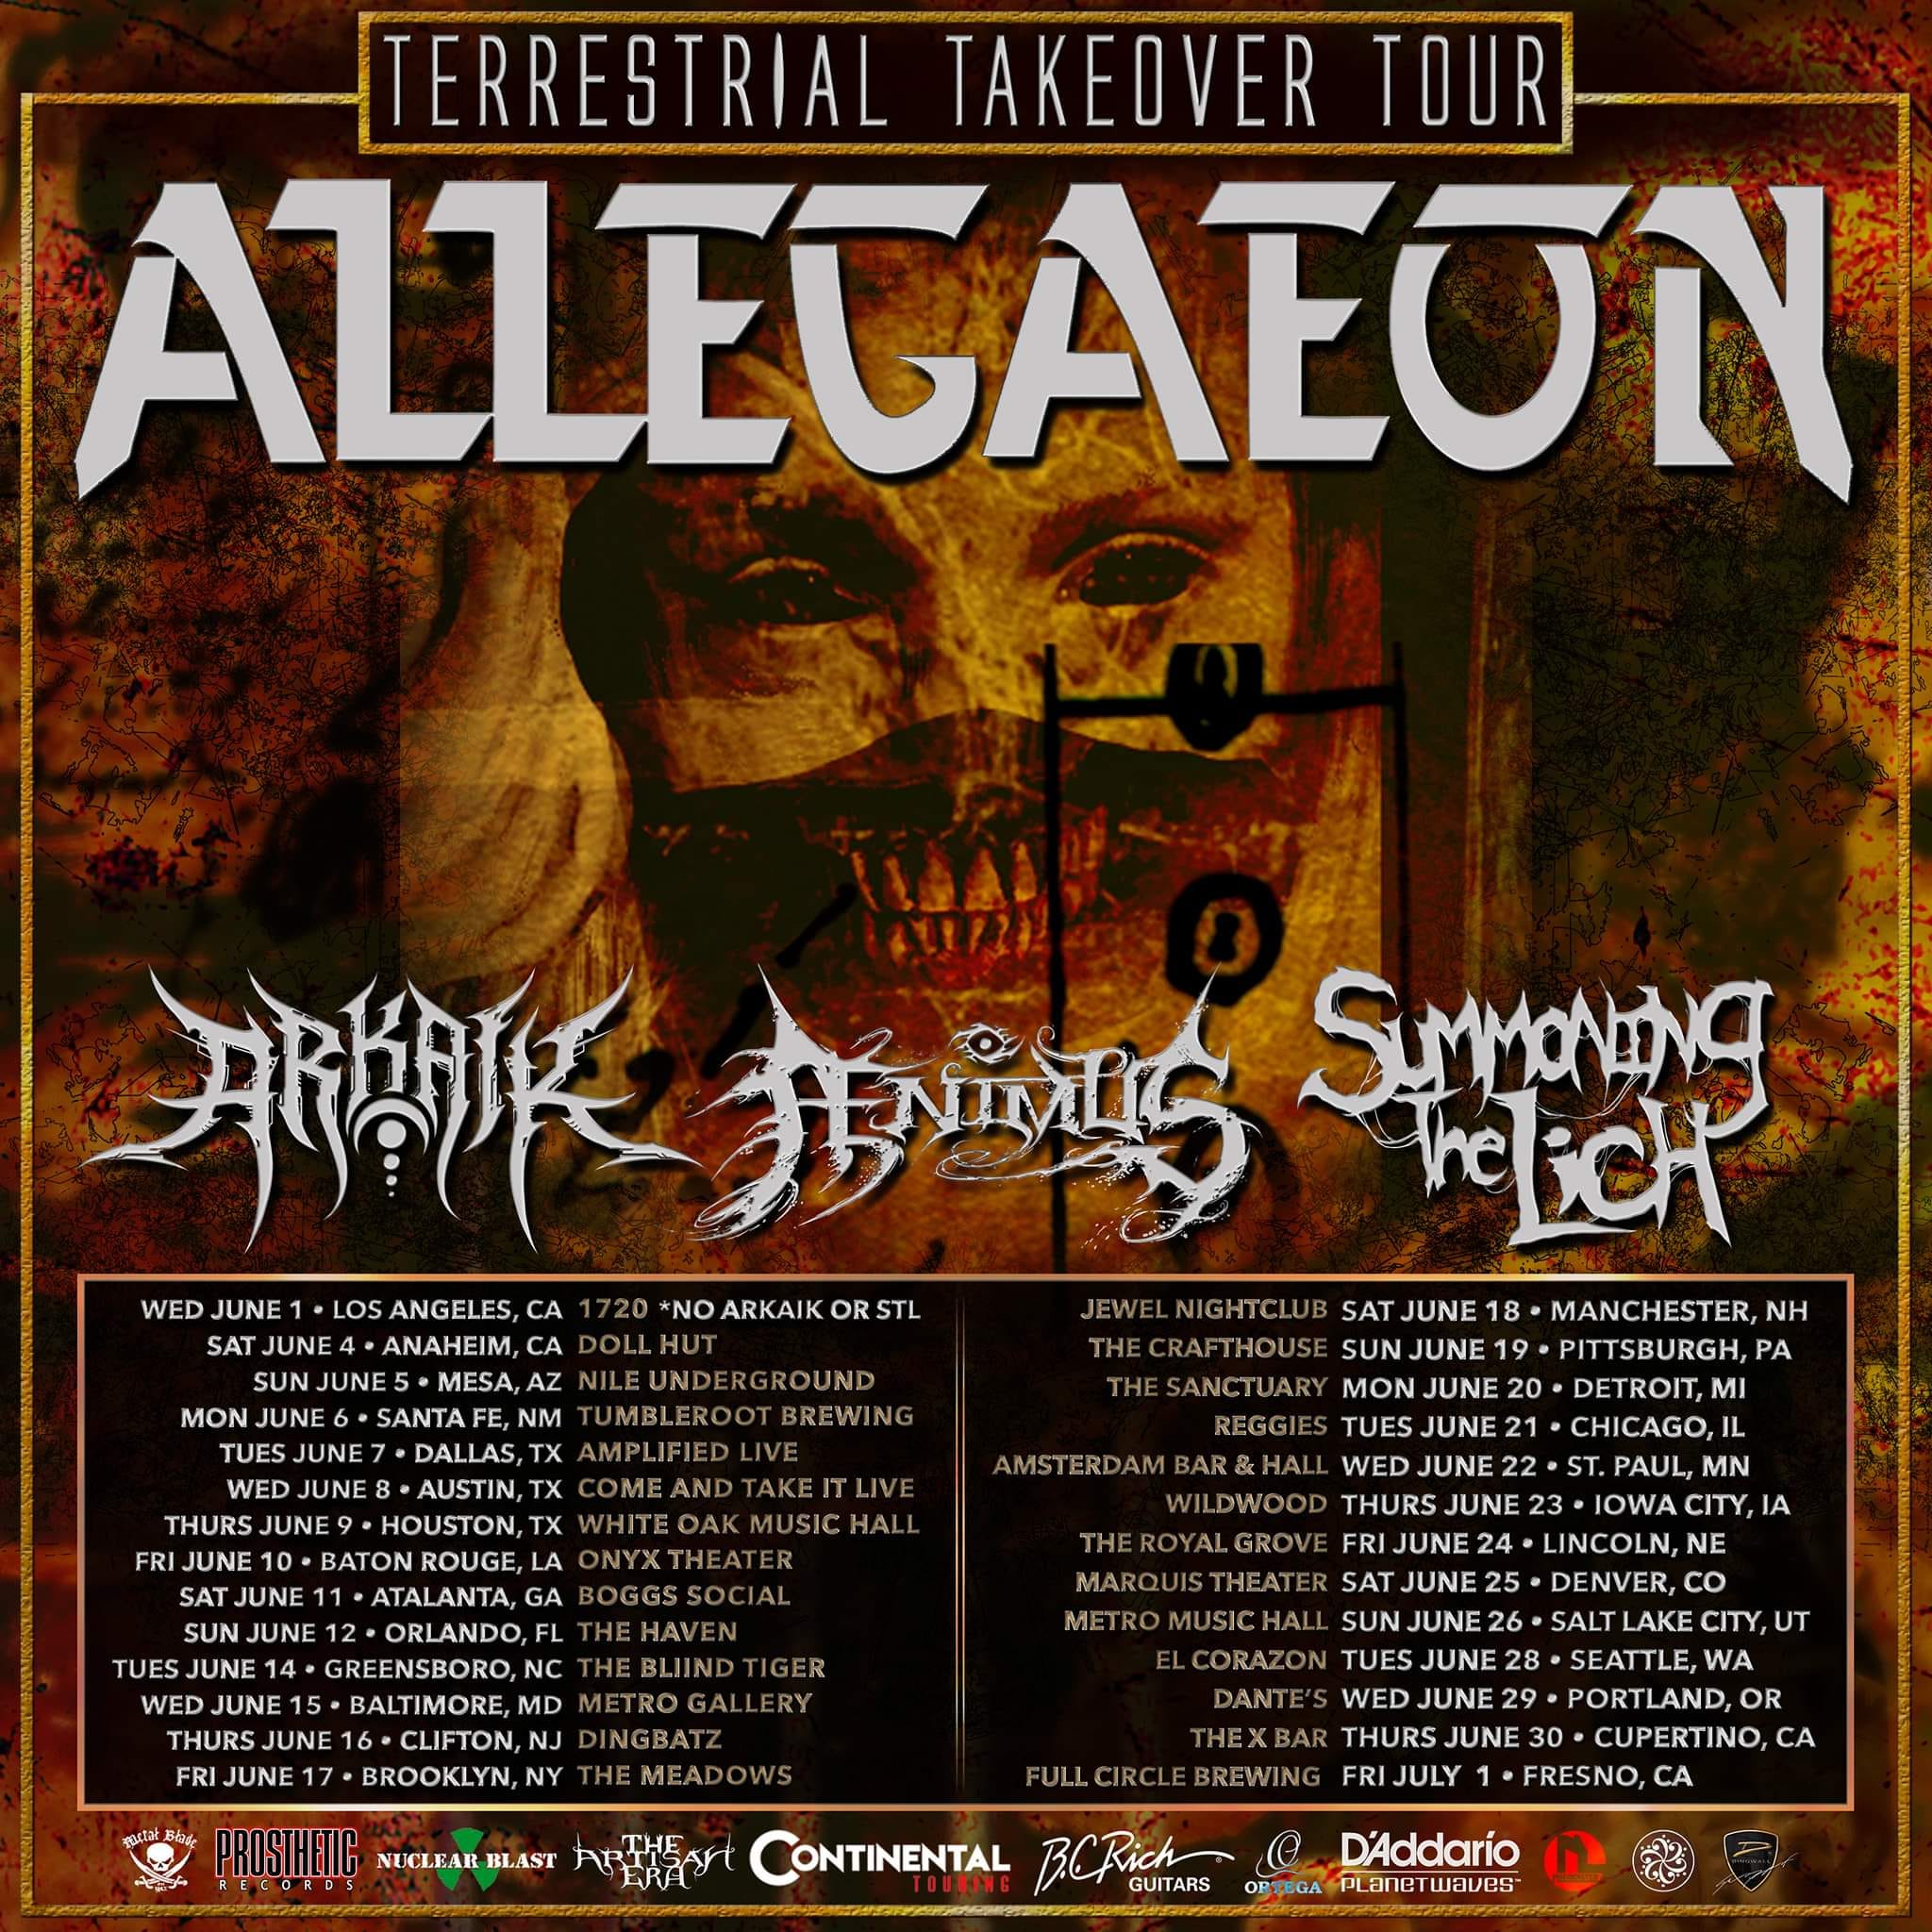 Allegaeon Announces Terrestrial Takeover Us Headlining Tour With Arkaik